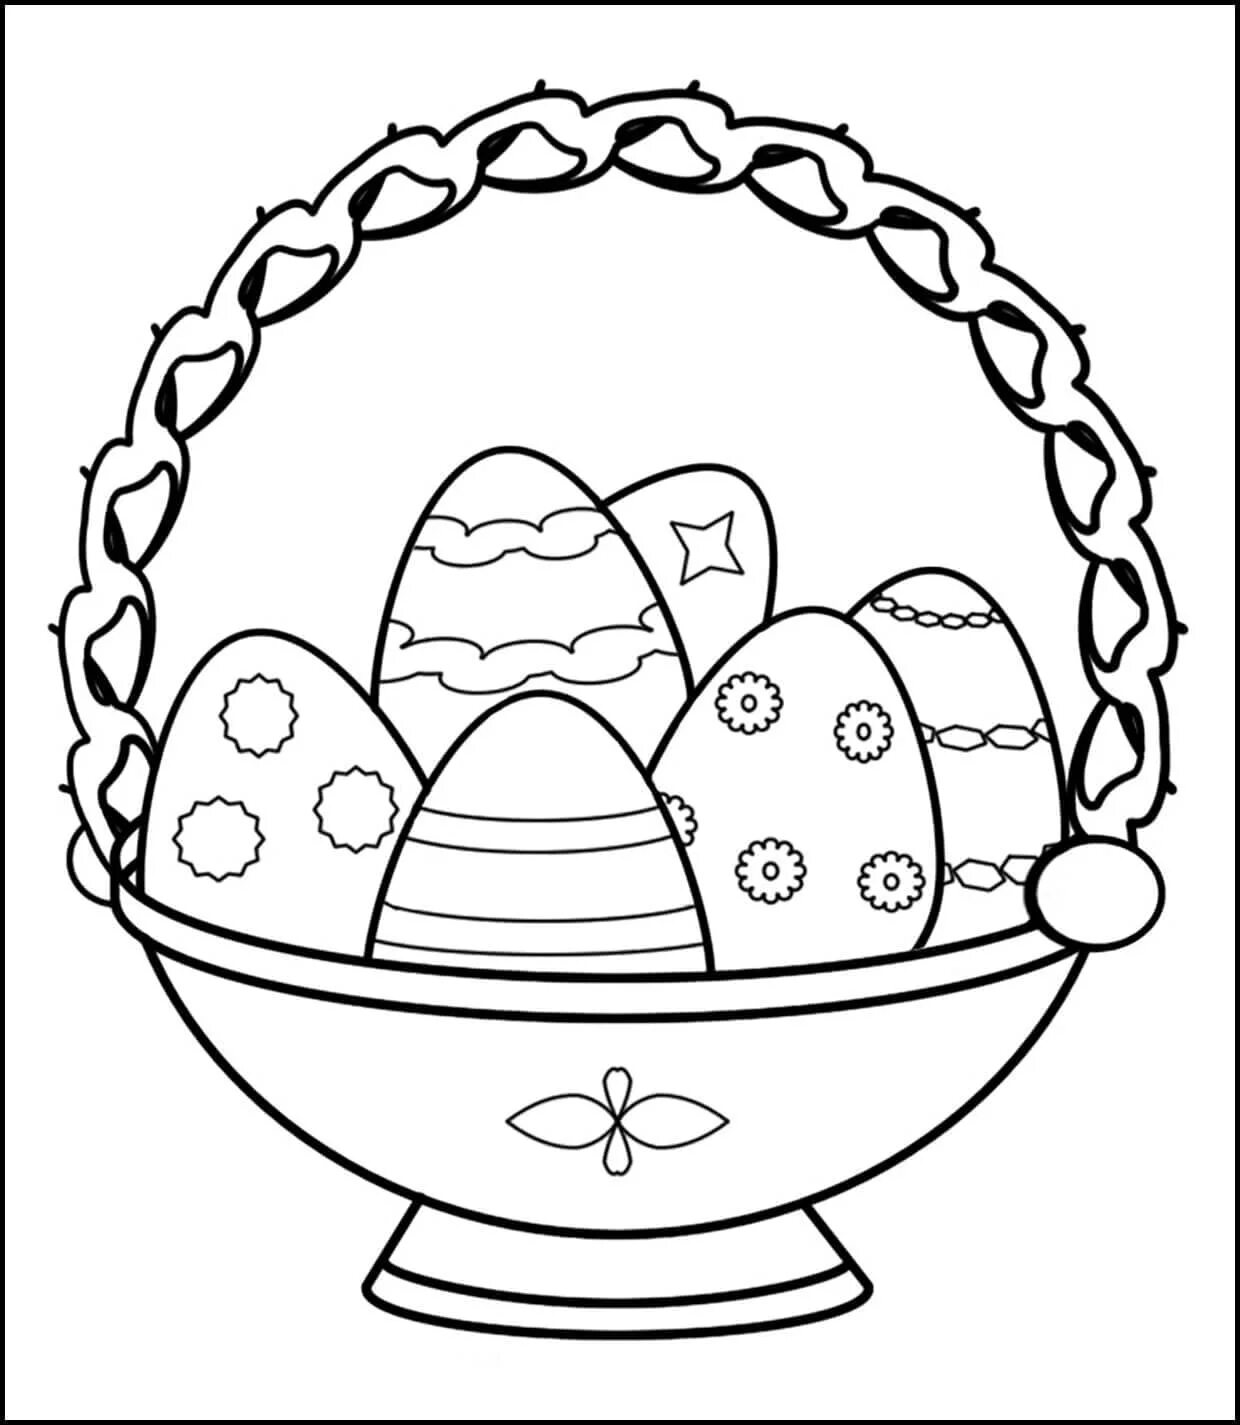 Рисунки на пасху для детей. Раскраска Пасхальный кулич. Раскраски пасхальные для детей. Пасхальное яйцо раскраска. Раскраска Пасха для детей.